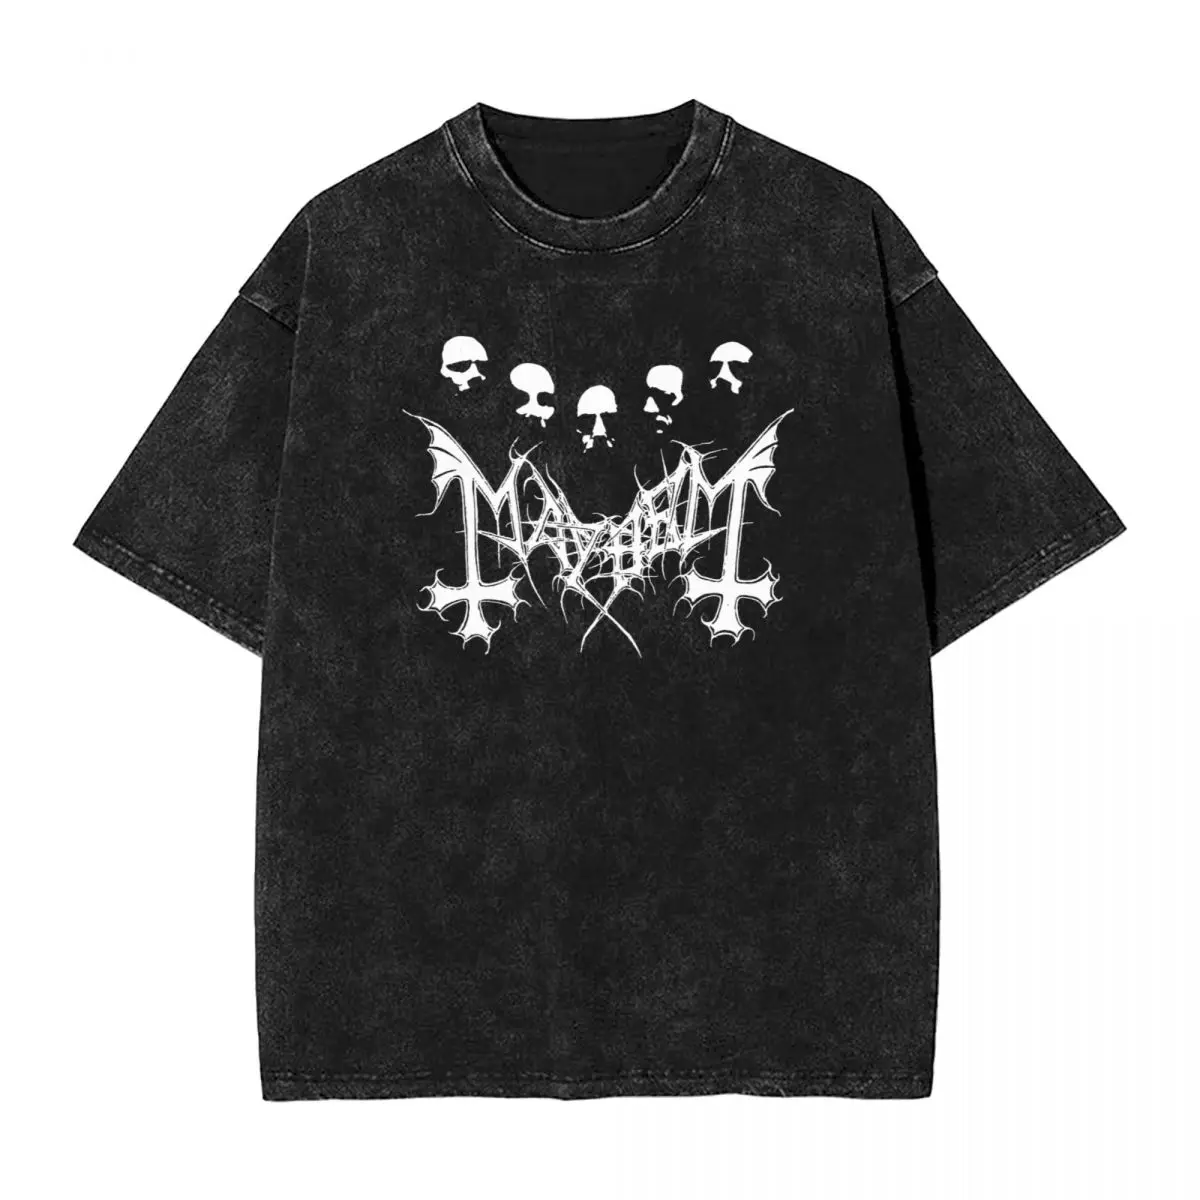 

Футболка Mayhem Death из металла, футболки оверсайз в стиле хип-хоп из 100% хлопка, винтажная уличная одежда для мужчин и женщин с музыкальной группой